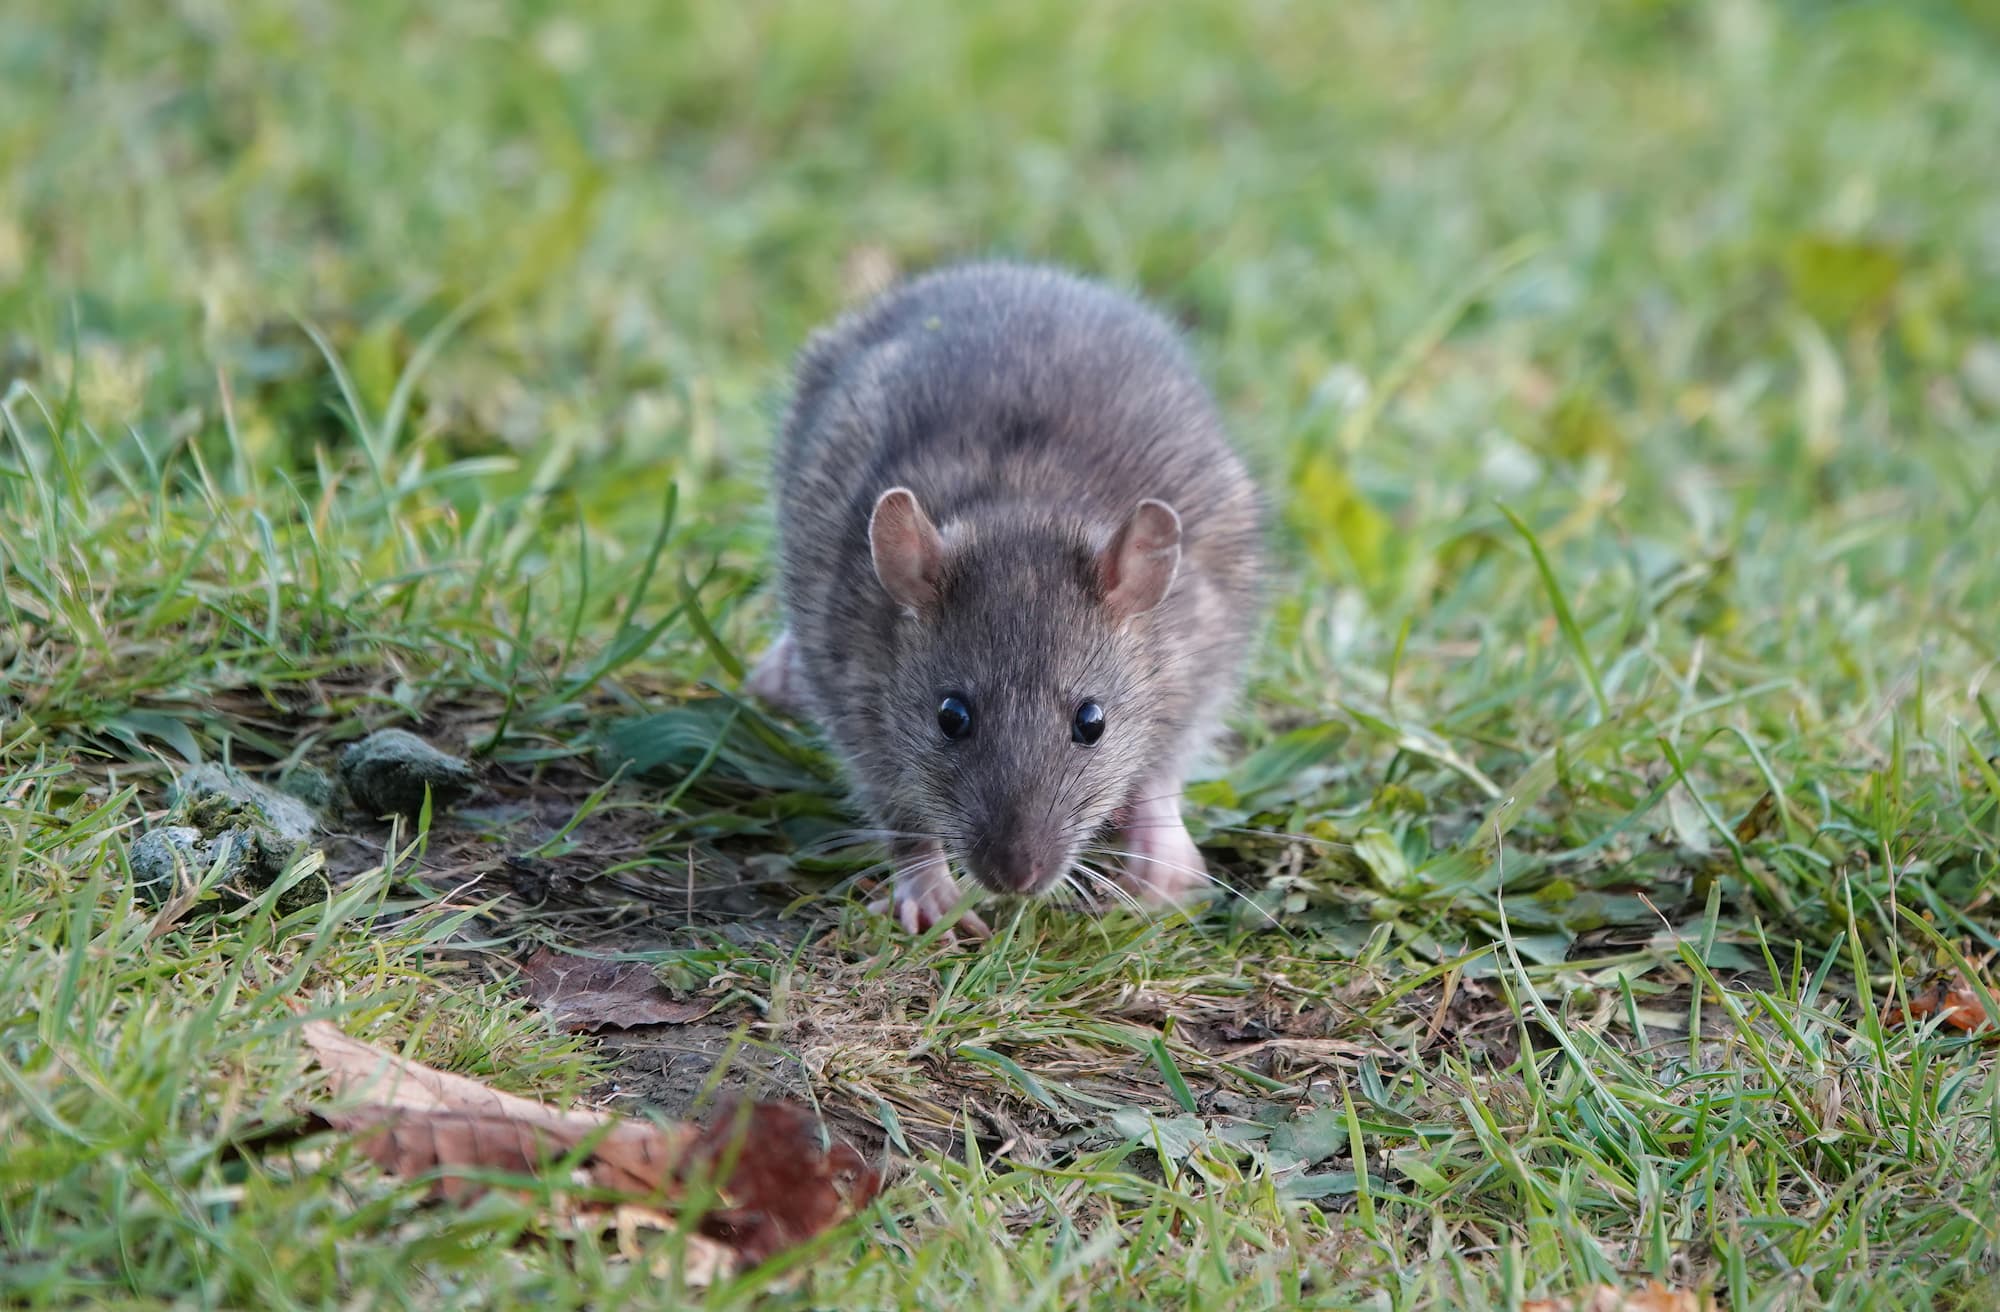 Les rats et les différents outils de lutte contre les rats